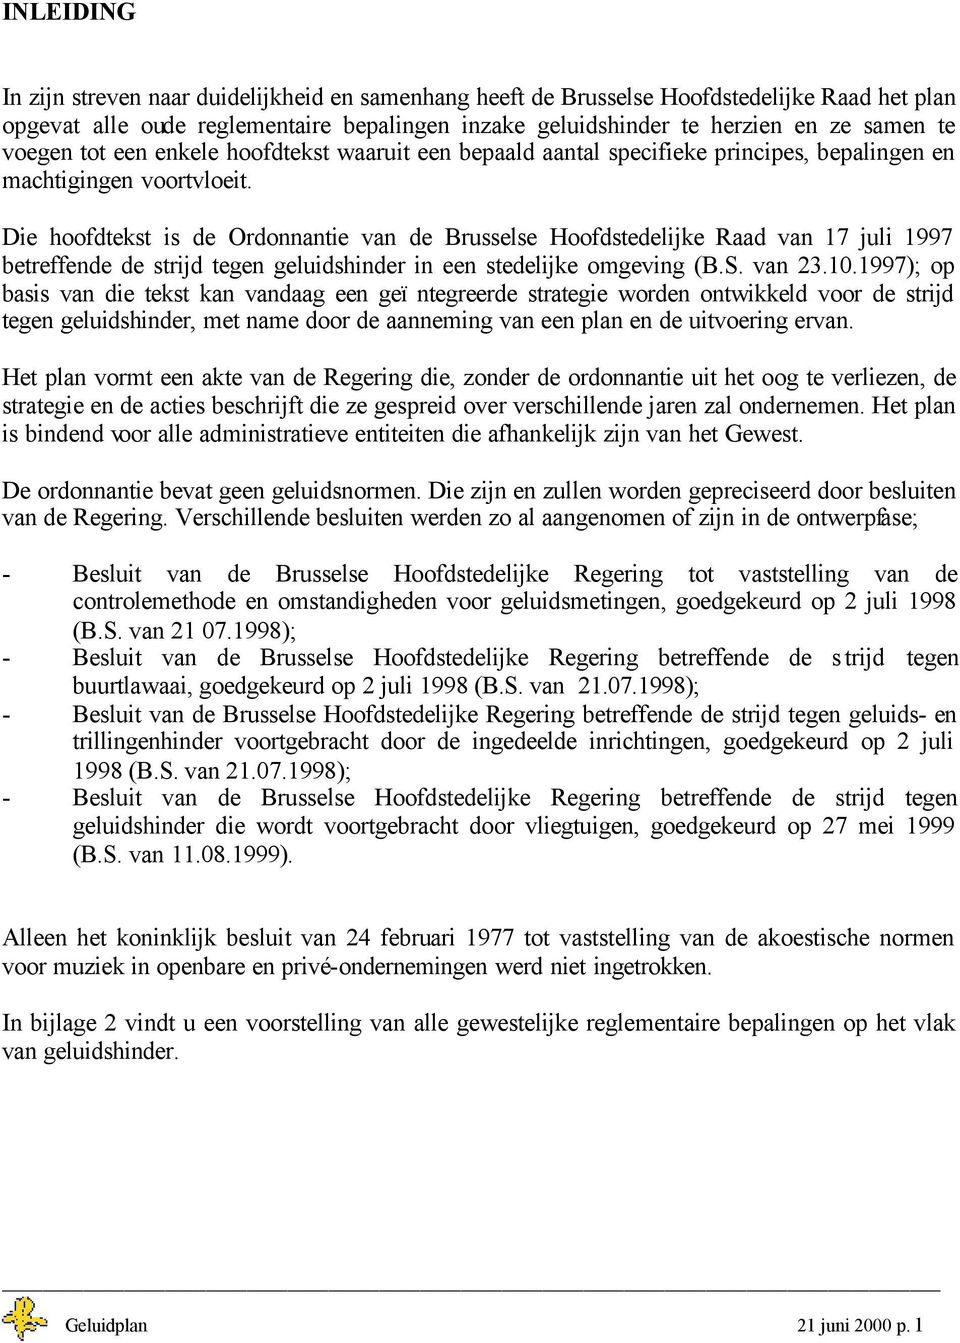 Die hoofdtekst is de Ordonnantie van de Brusselse Hoofdstedelijke Raad van 17 juli 1997 betreffende de strijd tegen geluidshinder in een stedelijke omgeving (B.S. van 23.10.